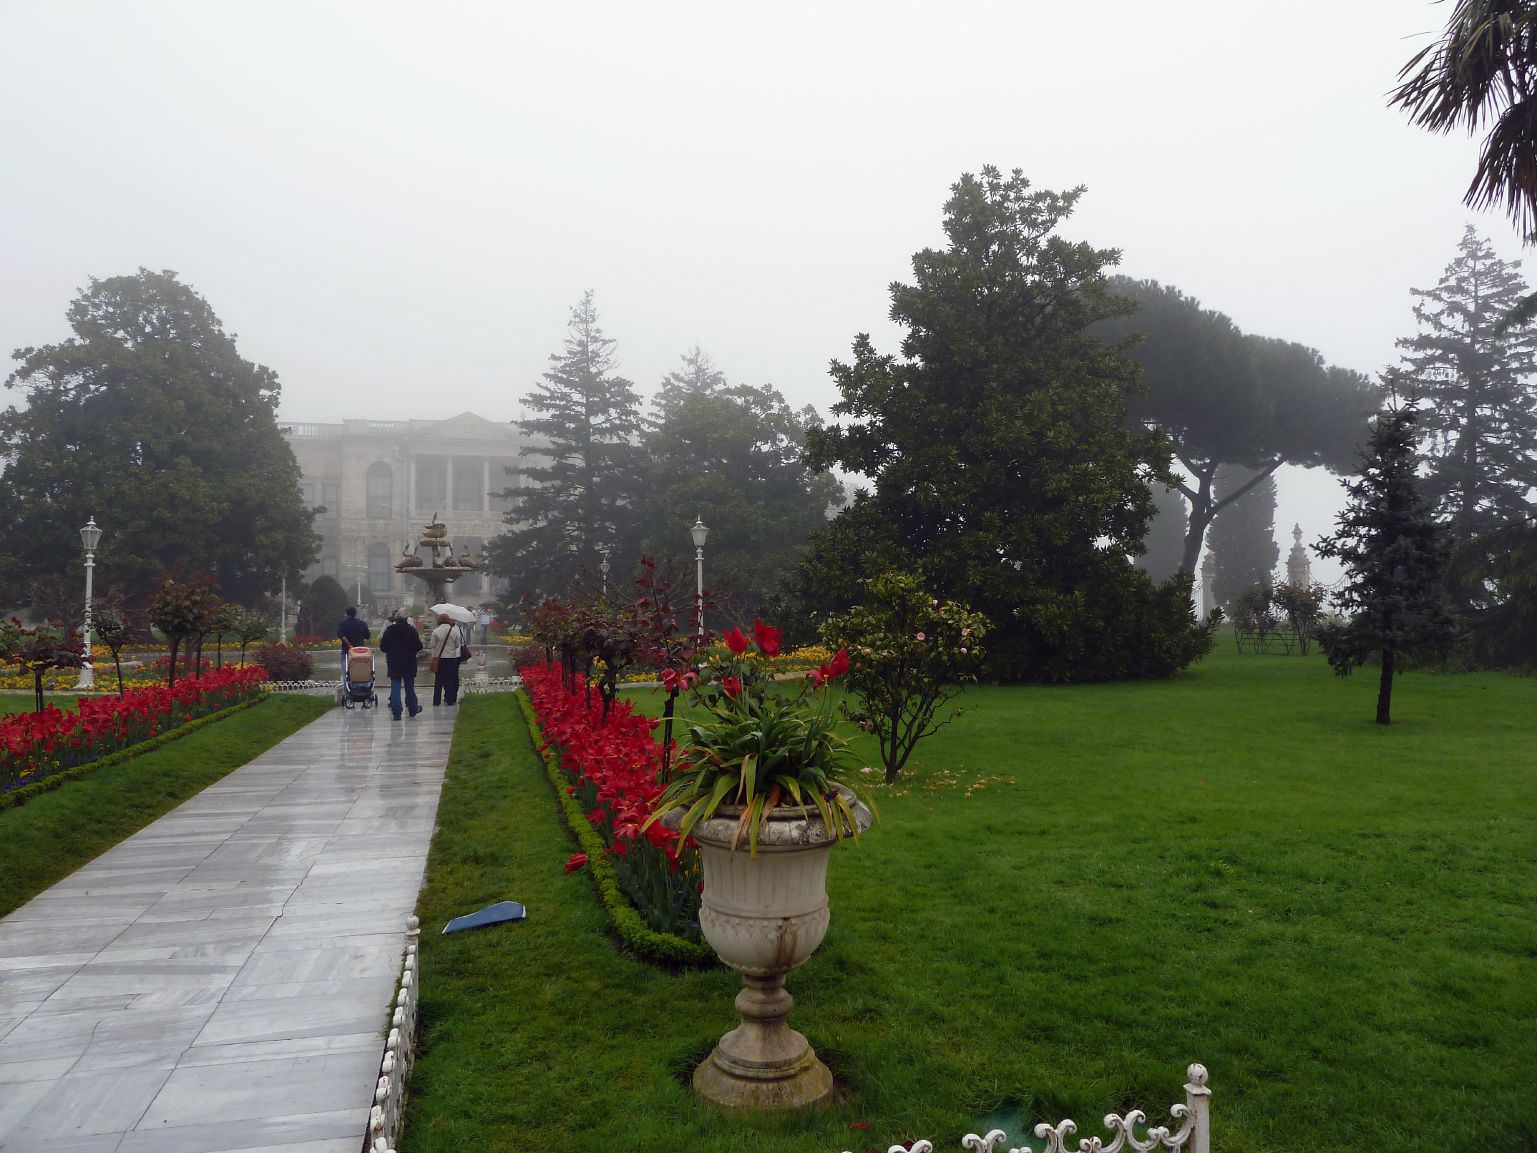 Οι πανέμορφοι κήποι του παλατιού - Dolmabahçe